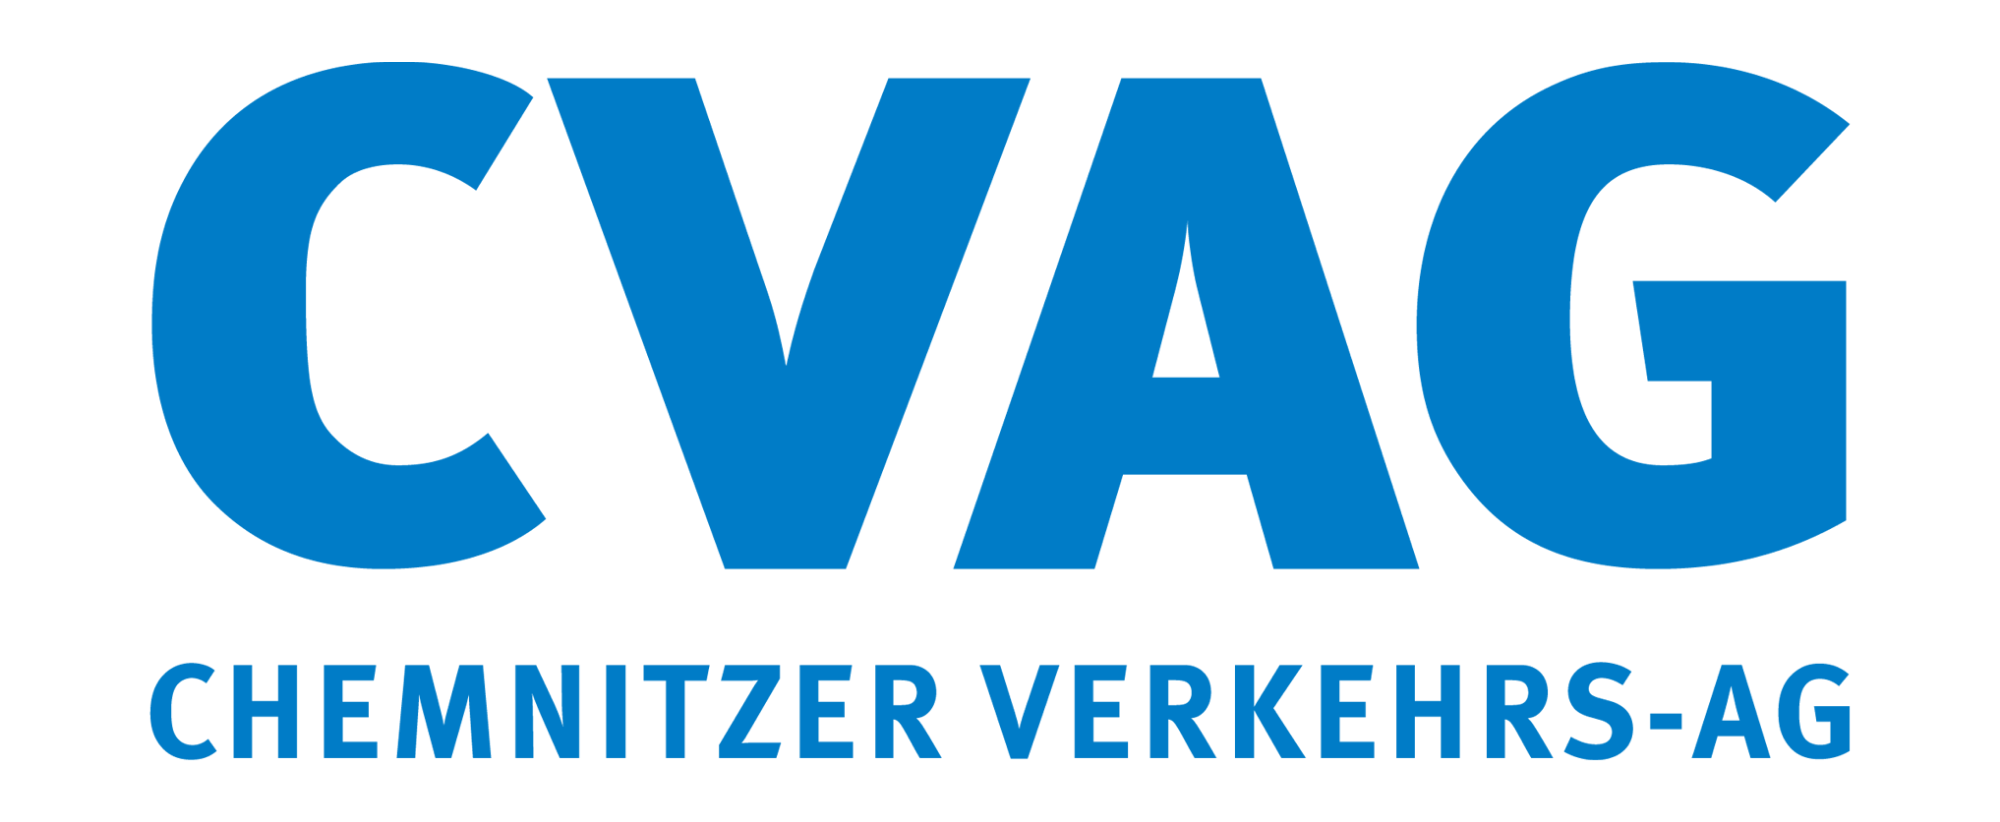 2019 CVAG-Logo_blau ohne Kasten.png